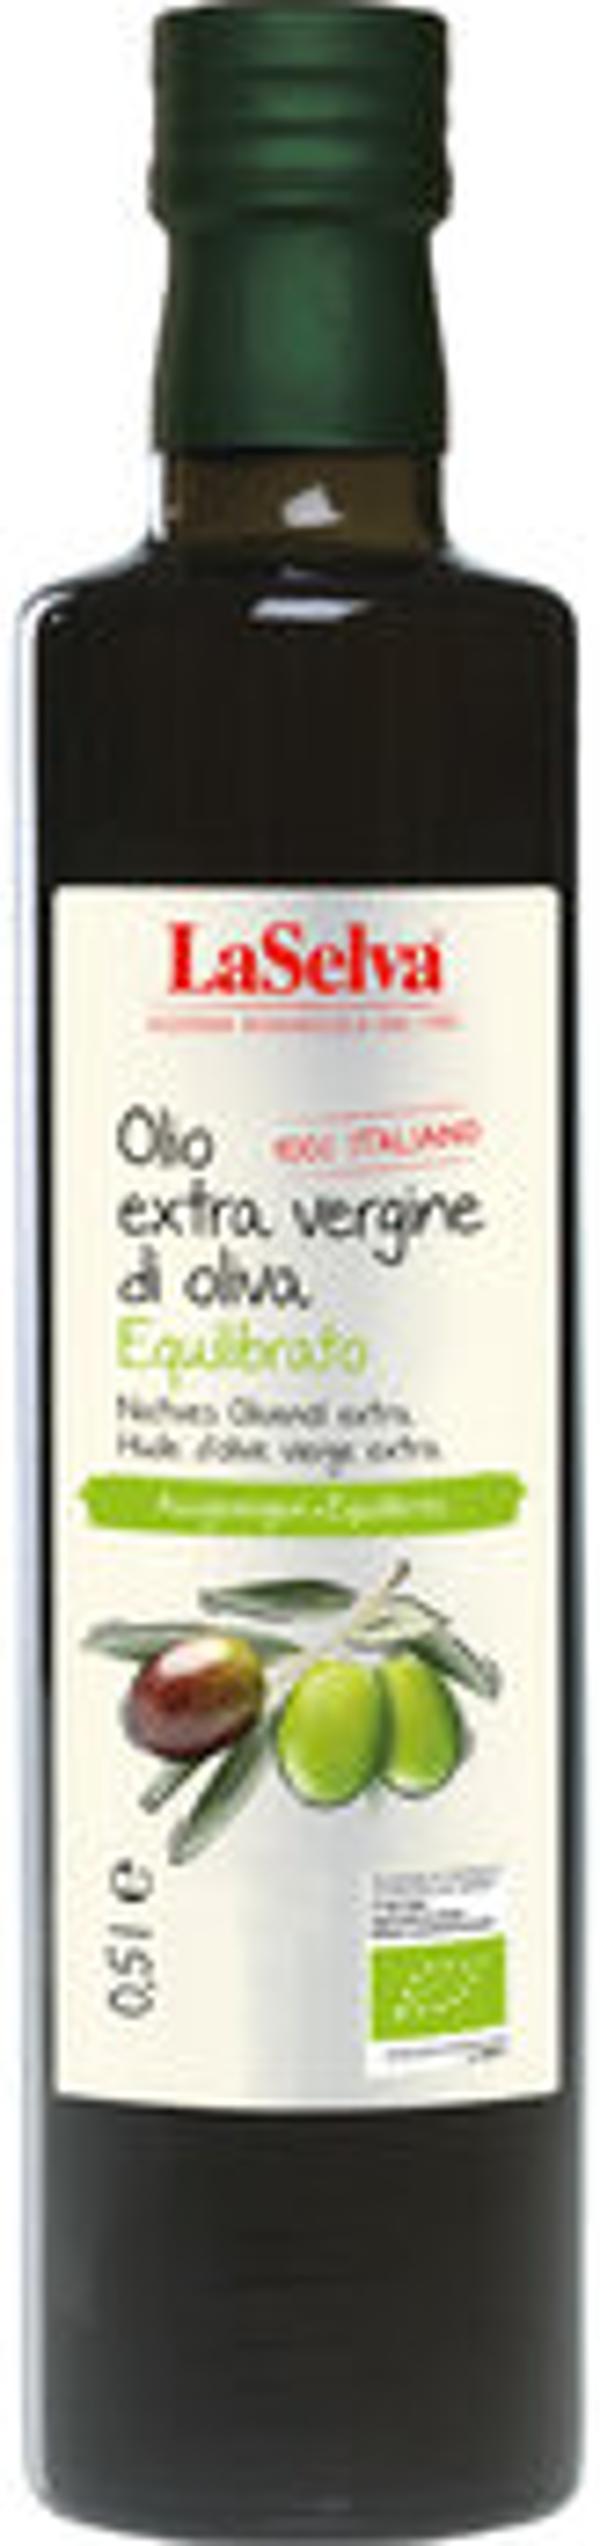 Produktfoto zu Natives Olivenöl extra - aus Kalabrien, Italien